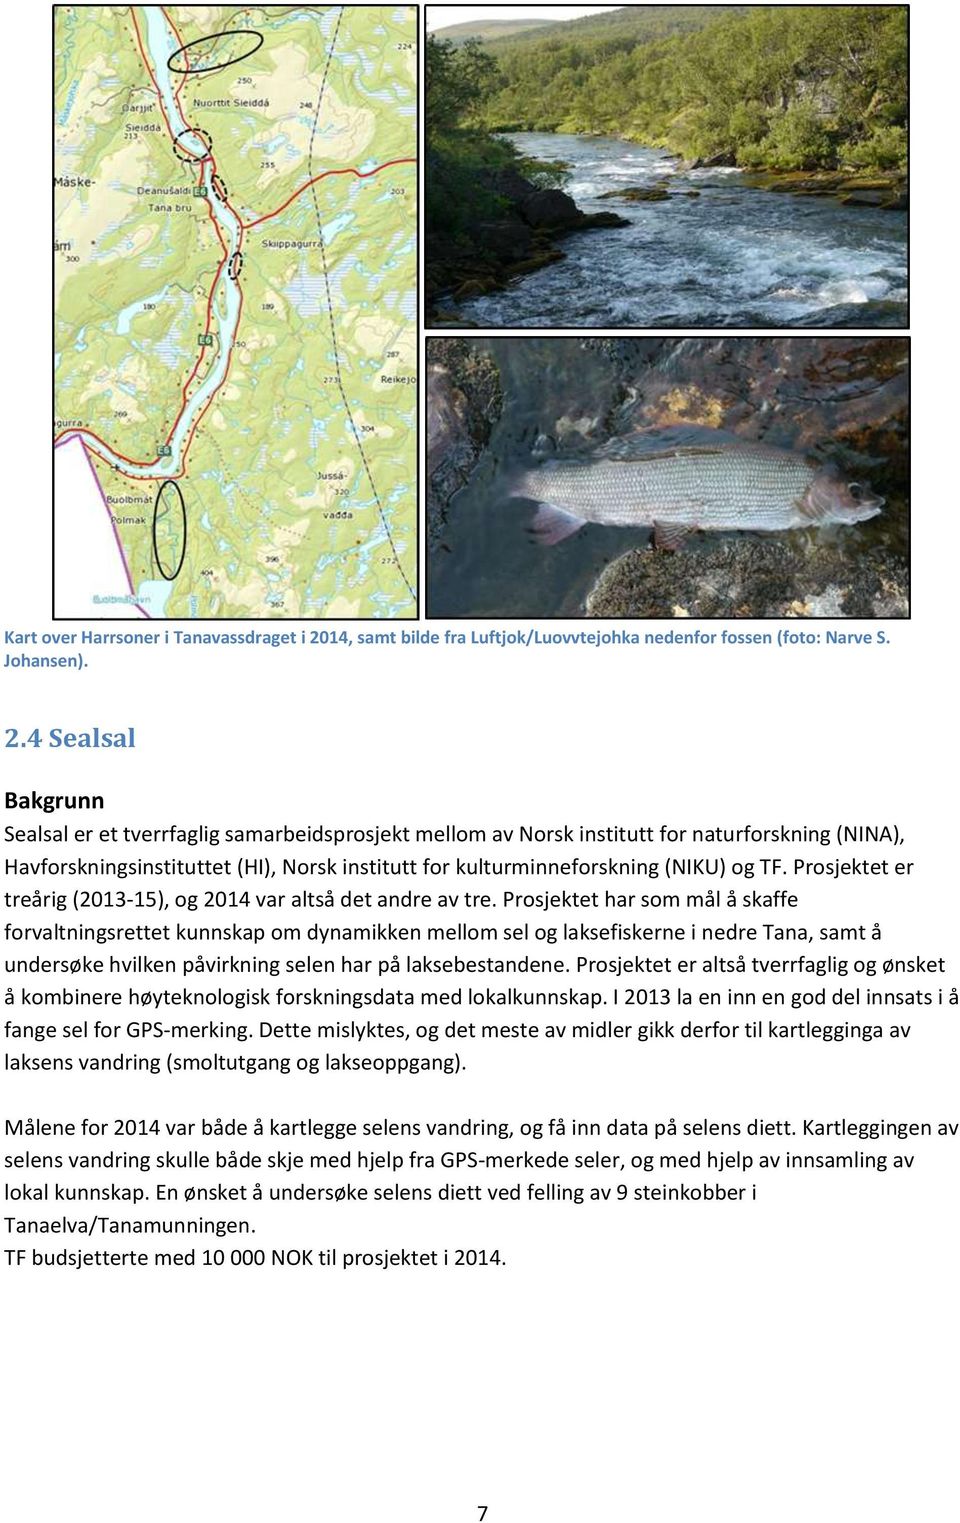 4 Sealsal Bakgrunn Sealsal er et tverrfaglig samarbeidsprosjekt mellom av Norsk institutt for naturforskning (NINA), Havforskningsinstituttet (HI), Norsk institutt for kulturminneforskning (NIKU) og